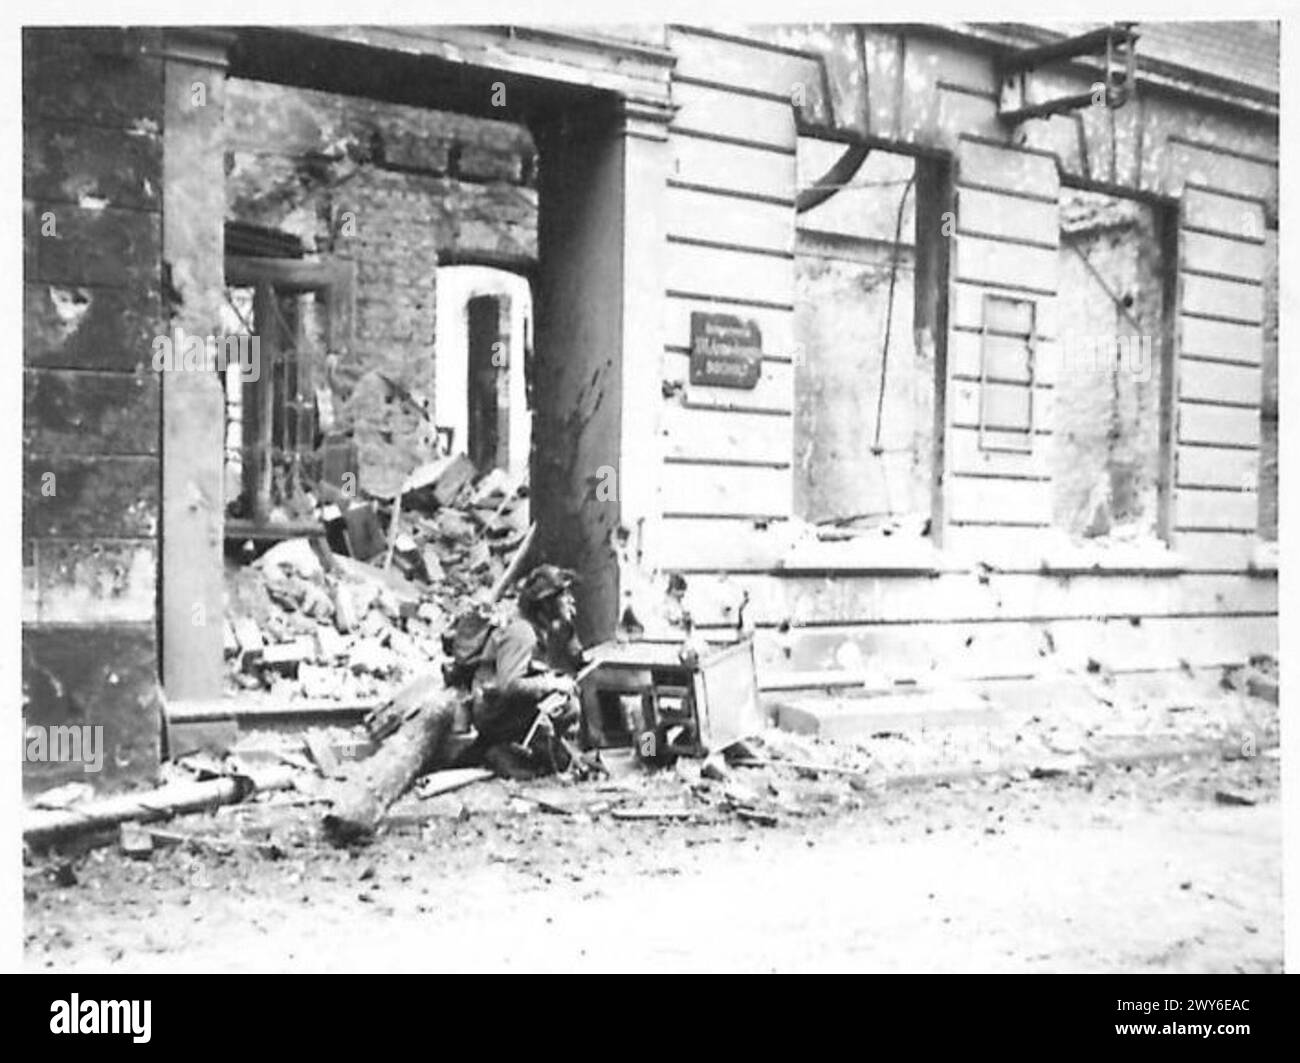 COMBATTIMENTI IN STRADA A BOCHOLT - un fanteria accovacciato dietro una stufa da cucina pronta a ripararsi da Spandau o dal fuoco di un proiettile. , British Army, 21st Army Group Foto Stock